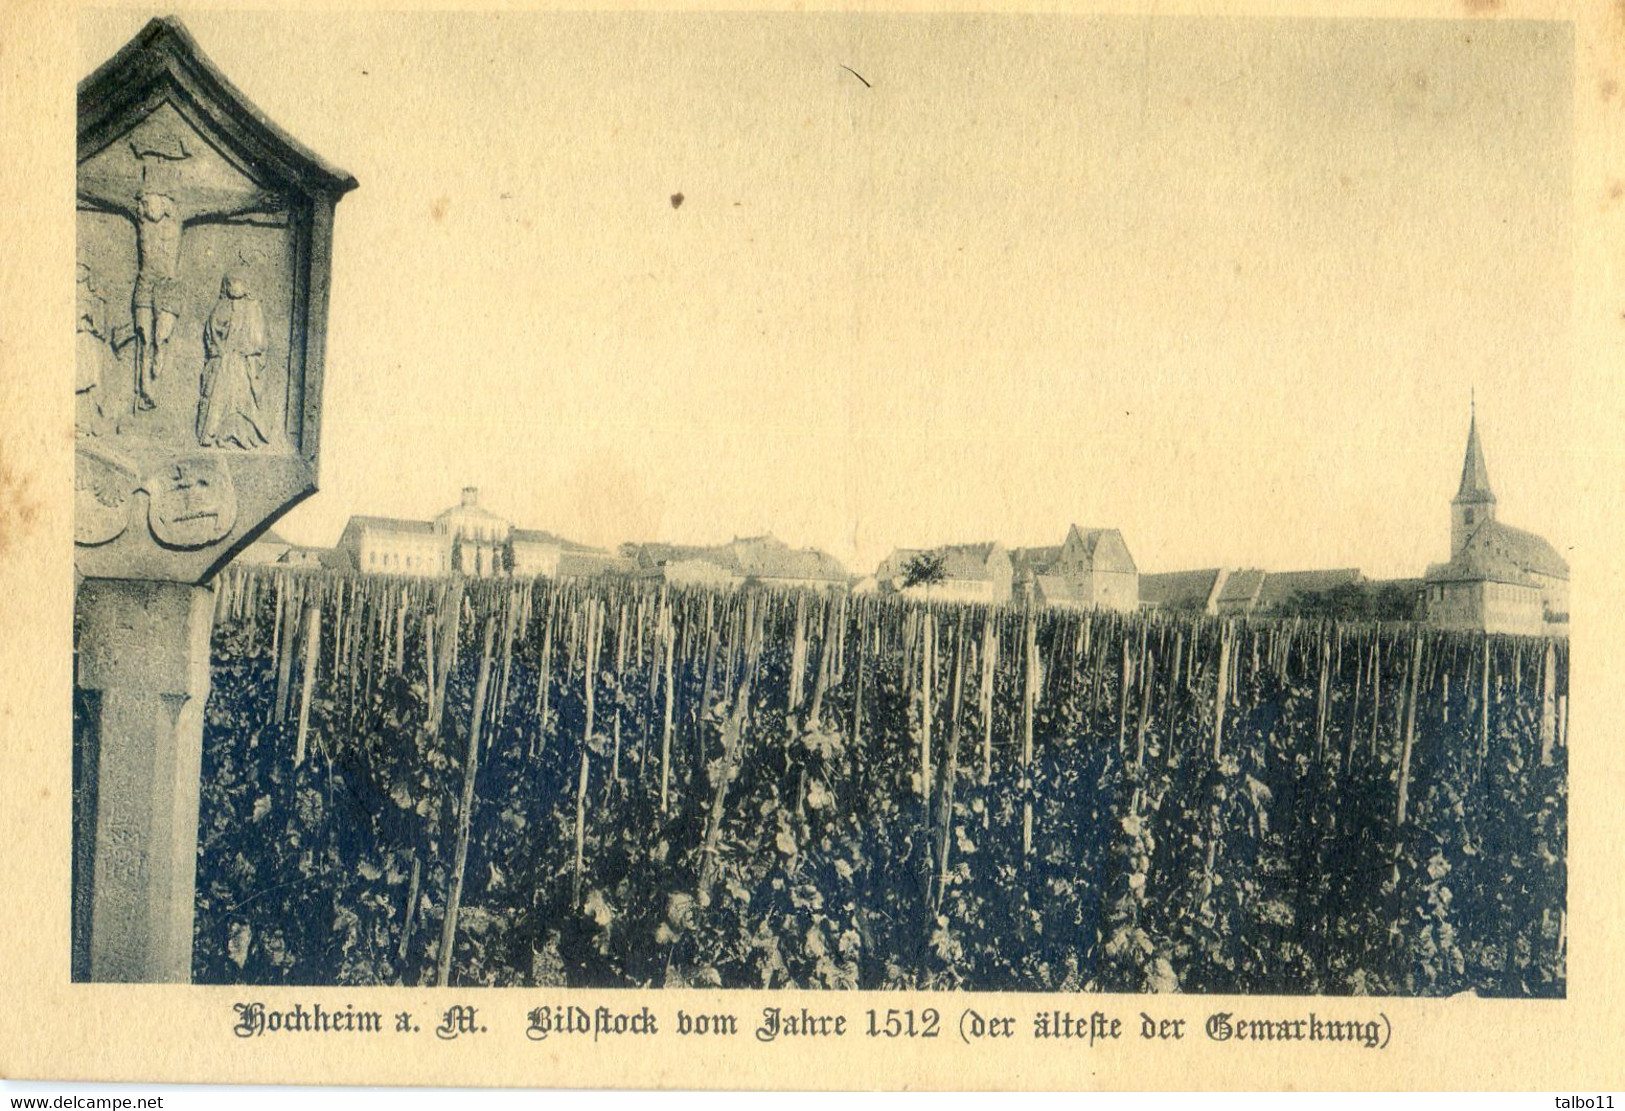 Hochheim A Main - Bildstock Vom Jahre 1512 - Hochheim A. Main